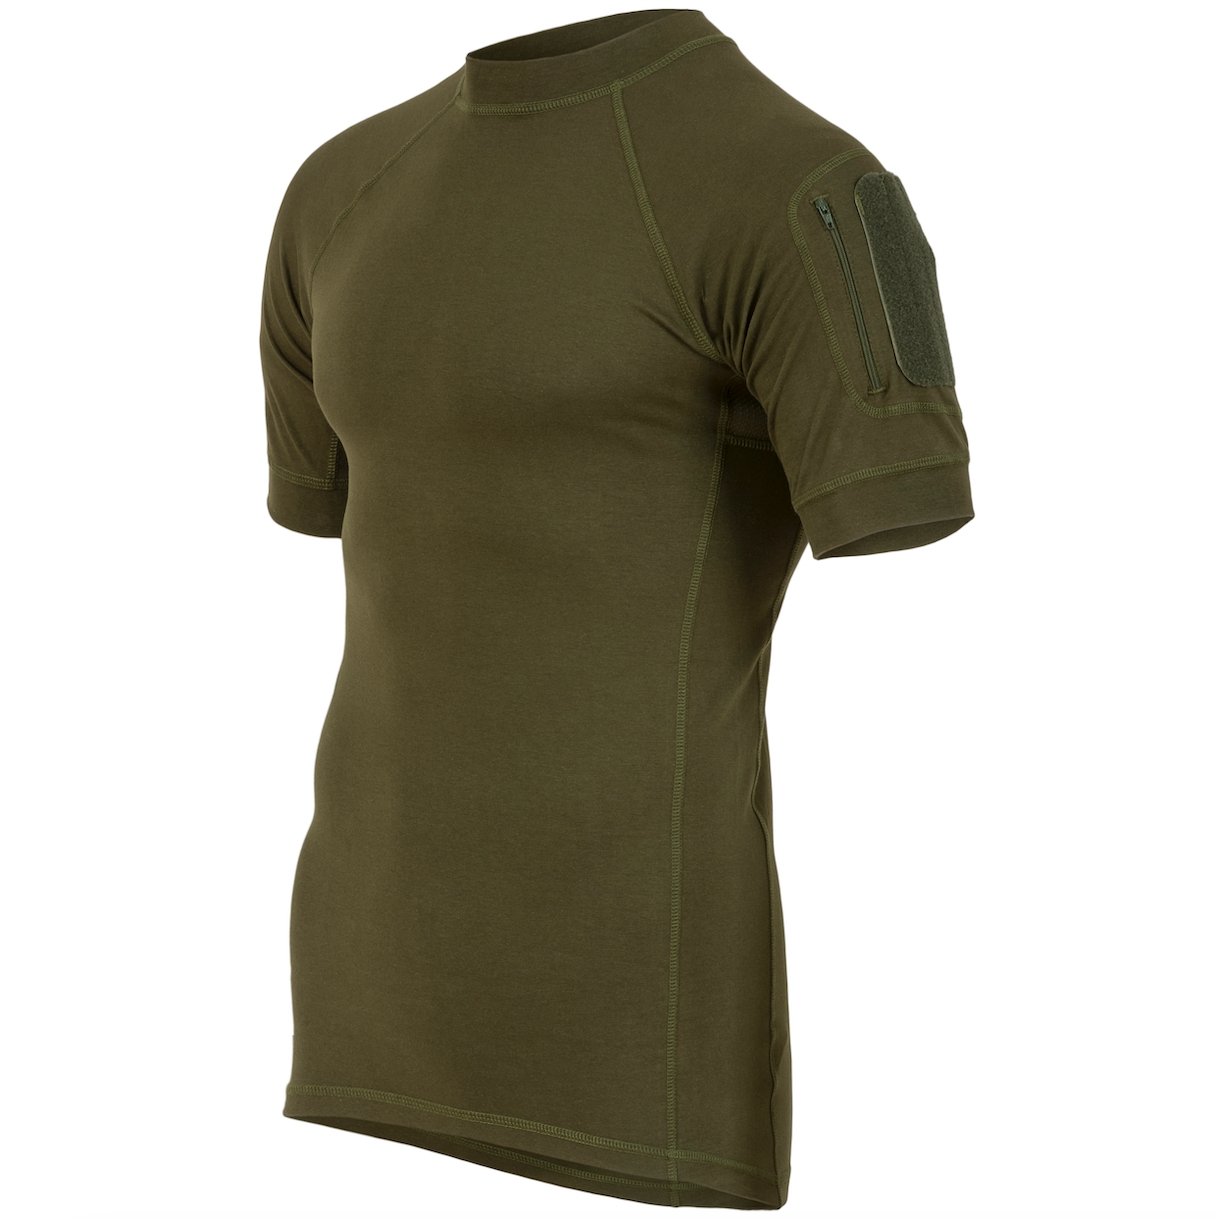 Highlander Combat T-Shirt Men's Olive Green